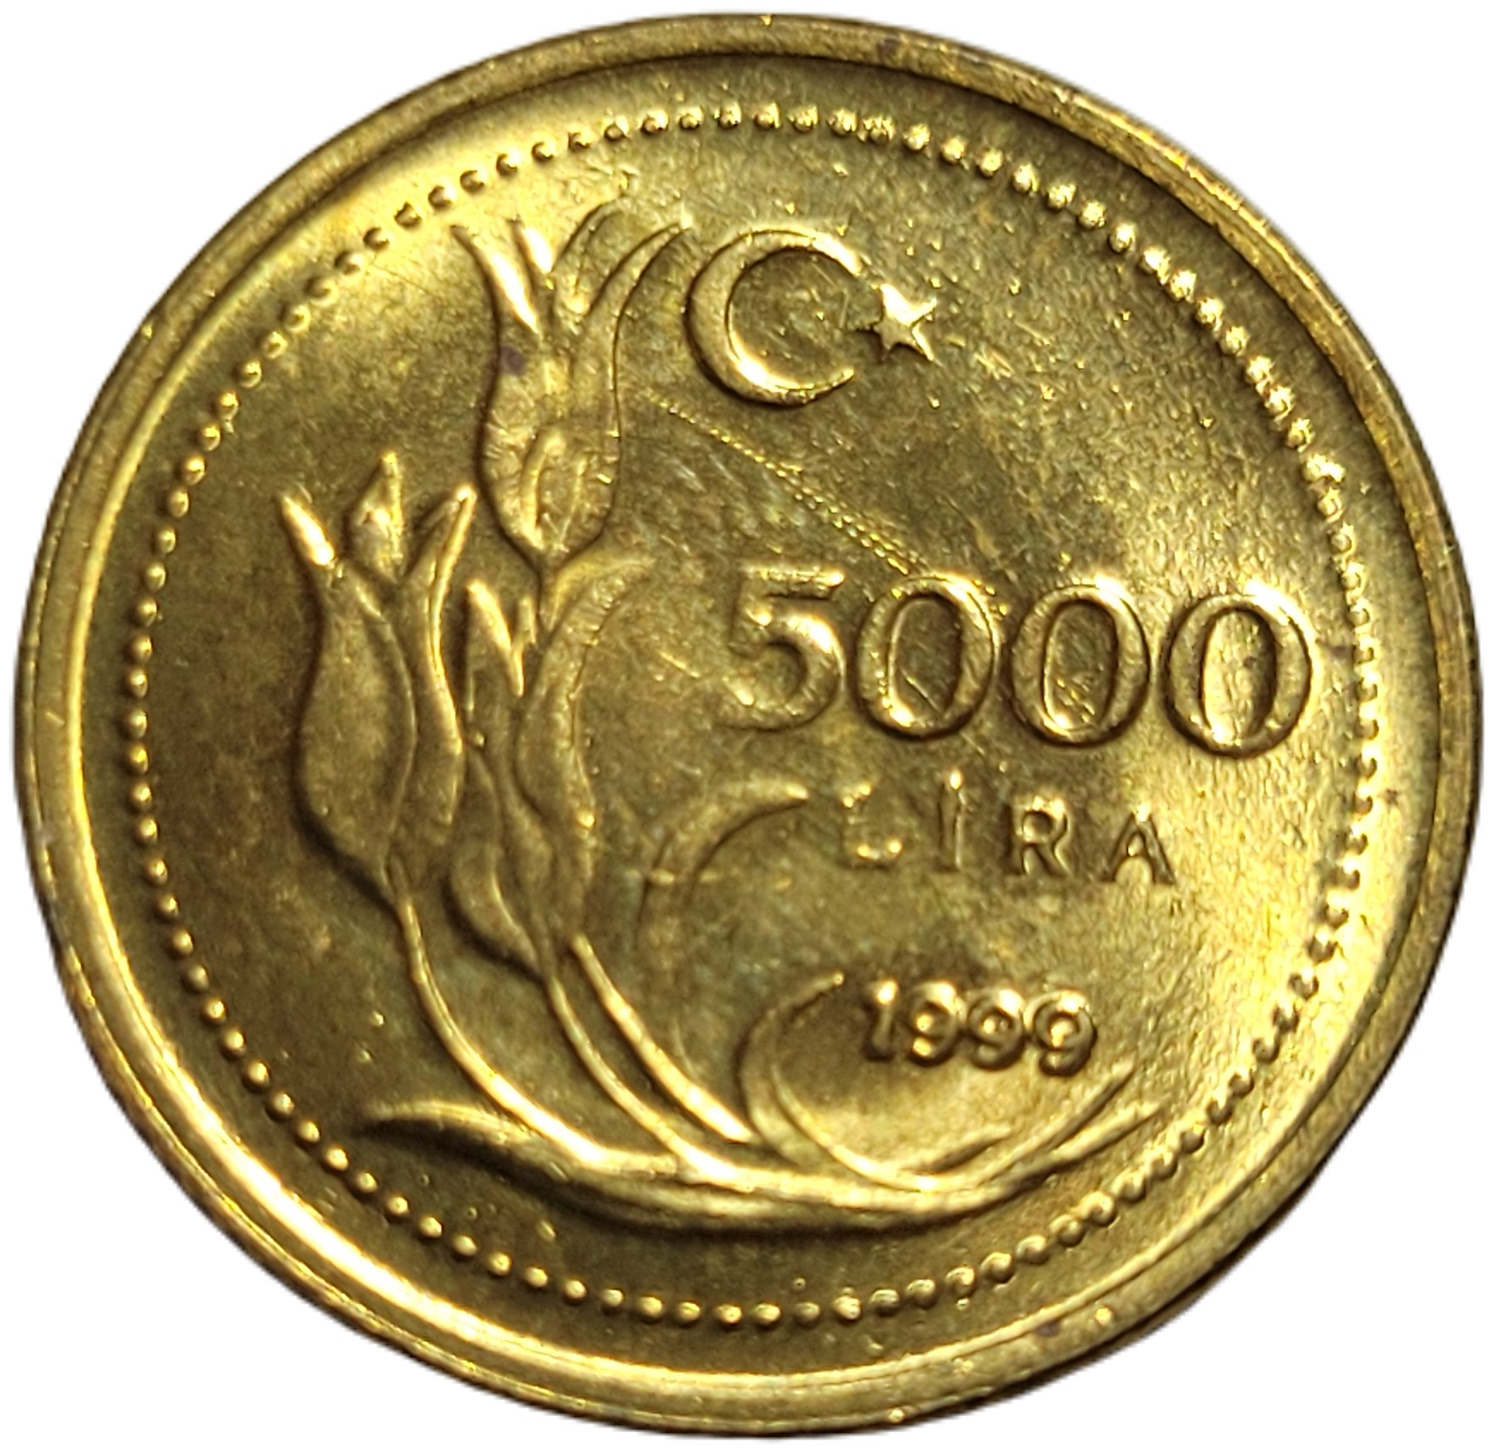 5000 Lira 1999 Ön Yüz